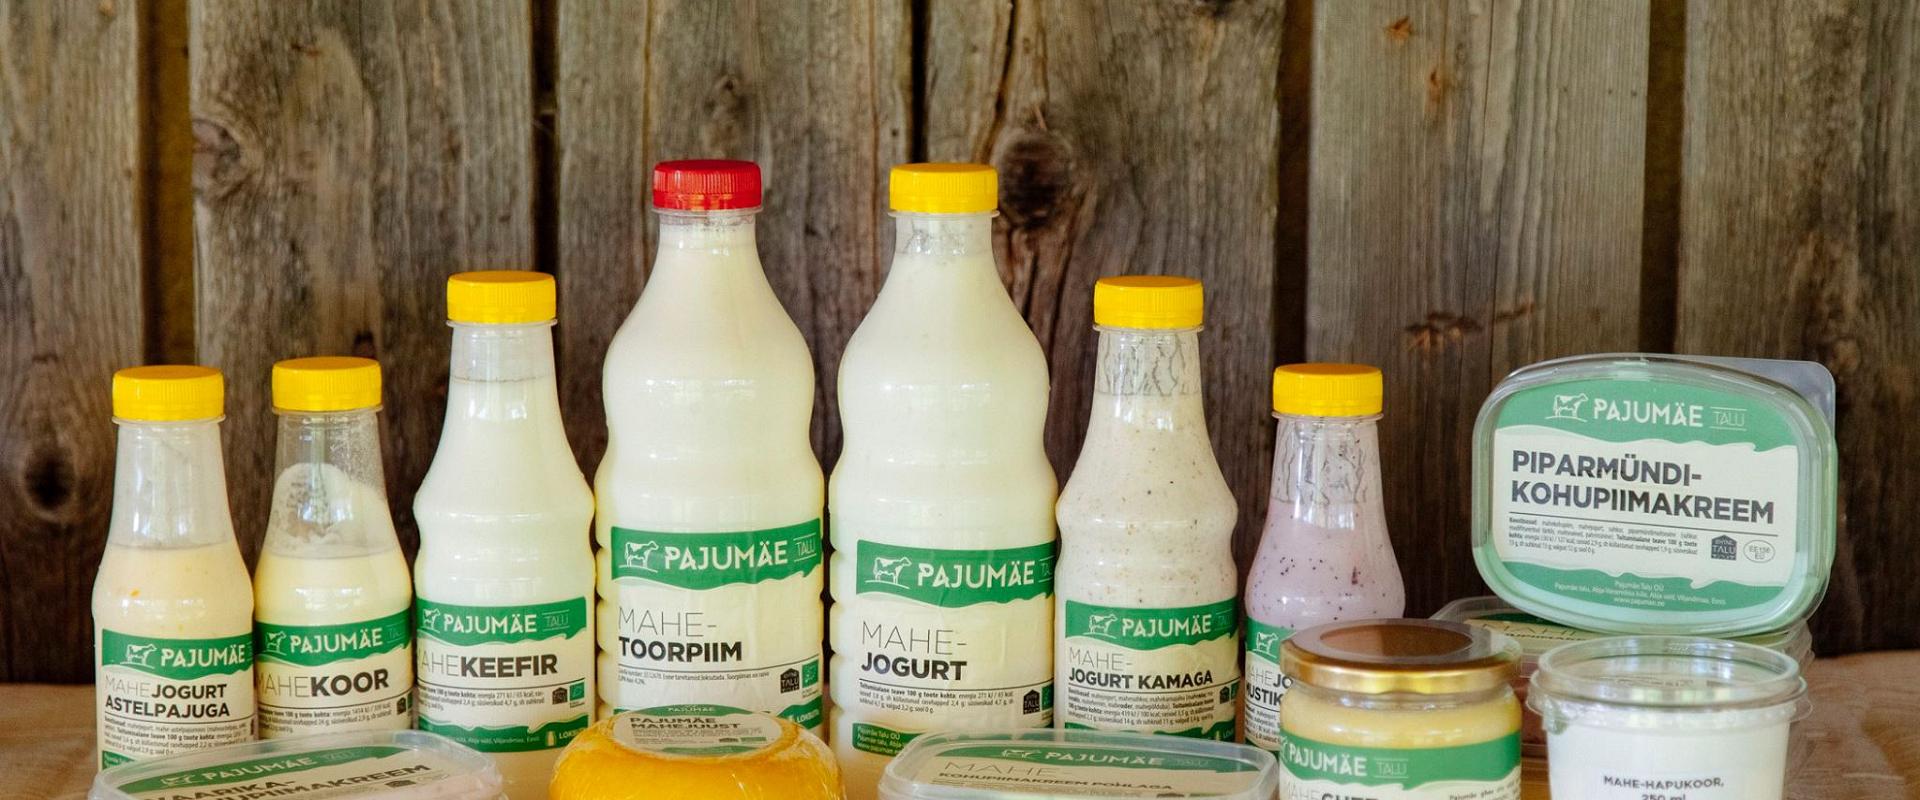 Tasting of dairy products at Pajumäe Farm